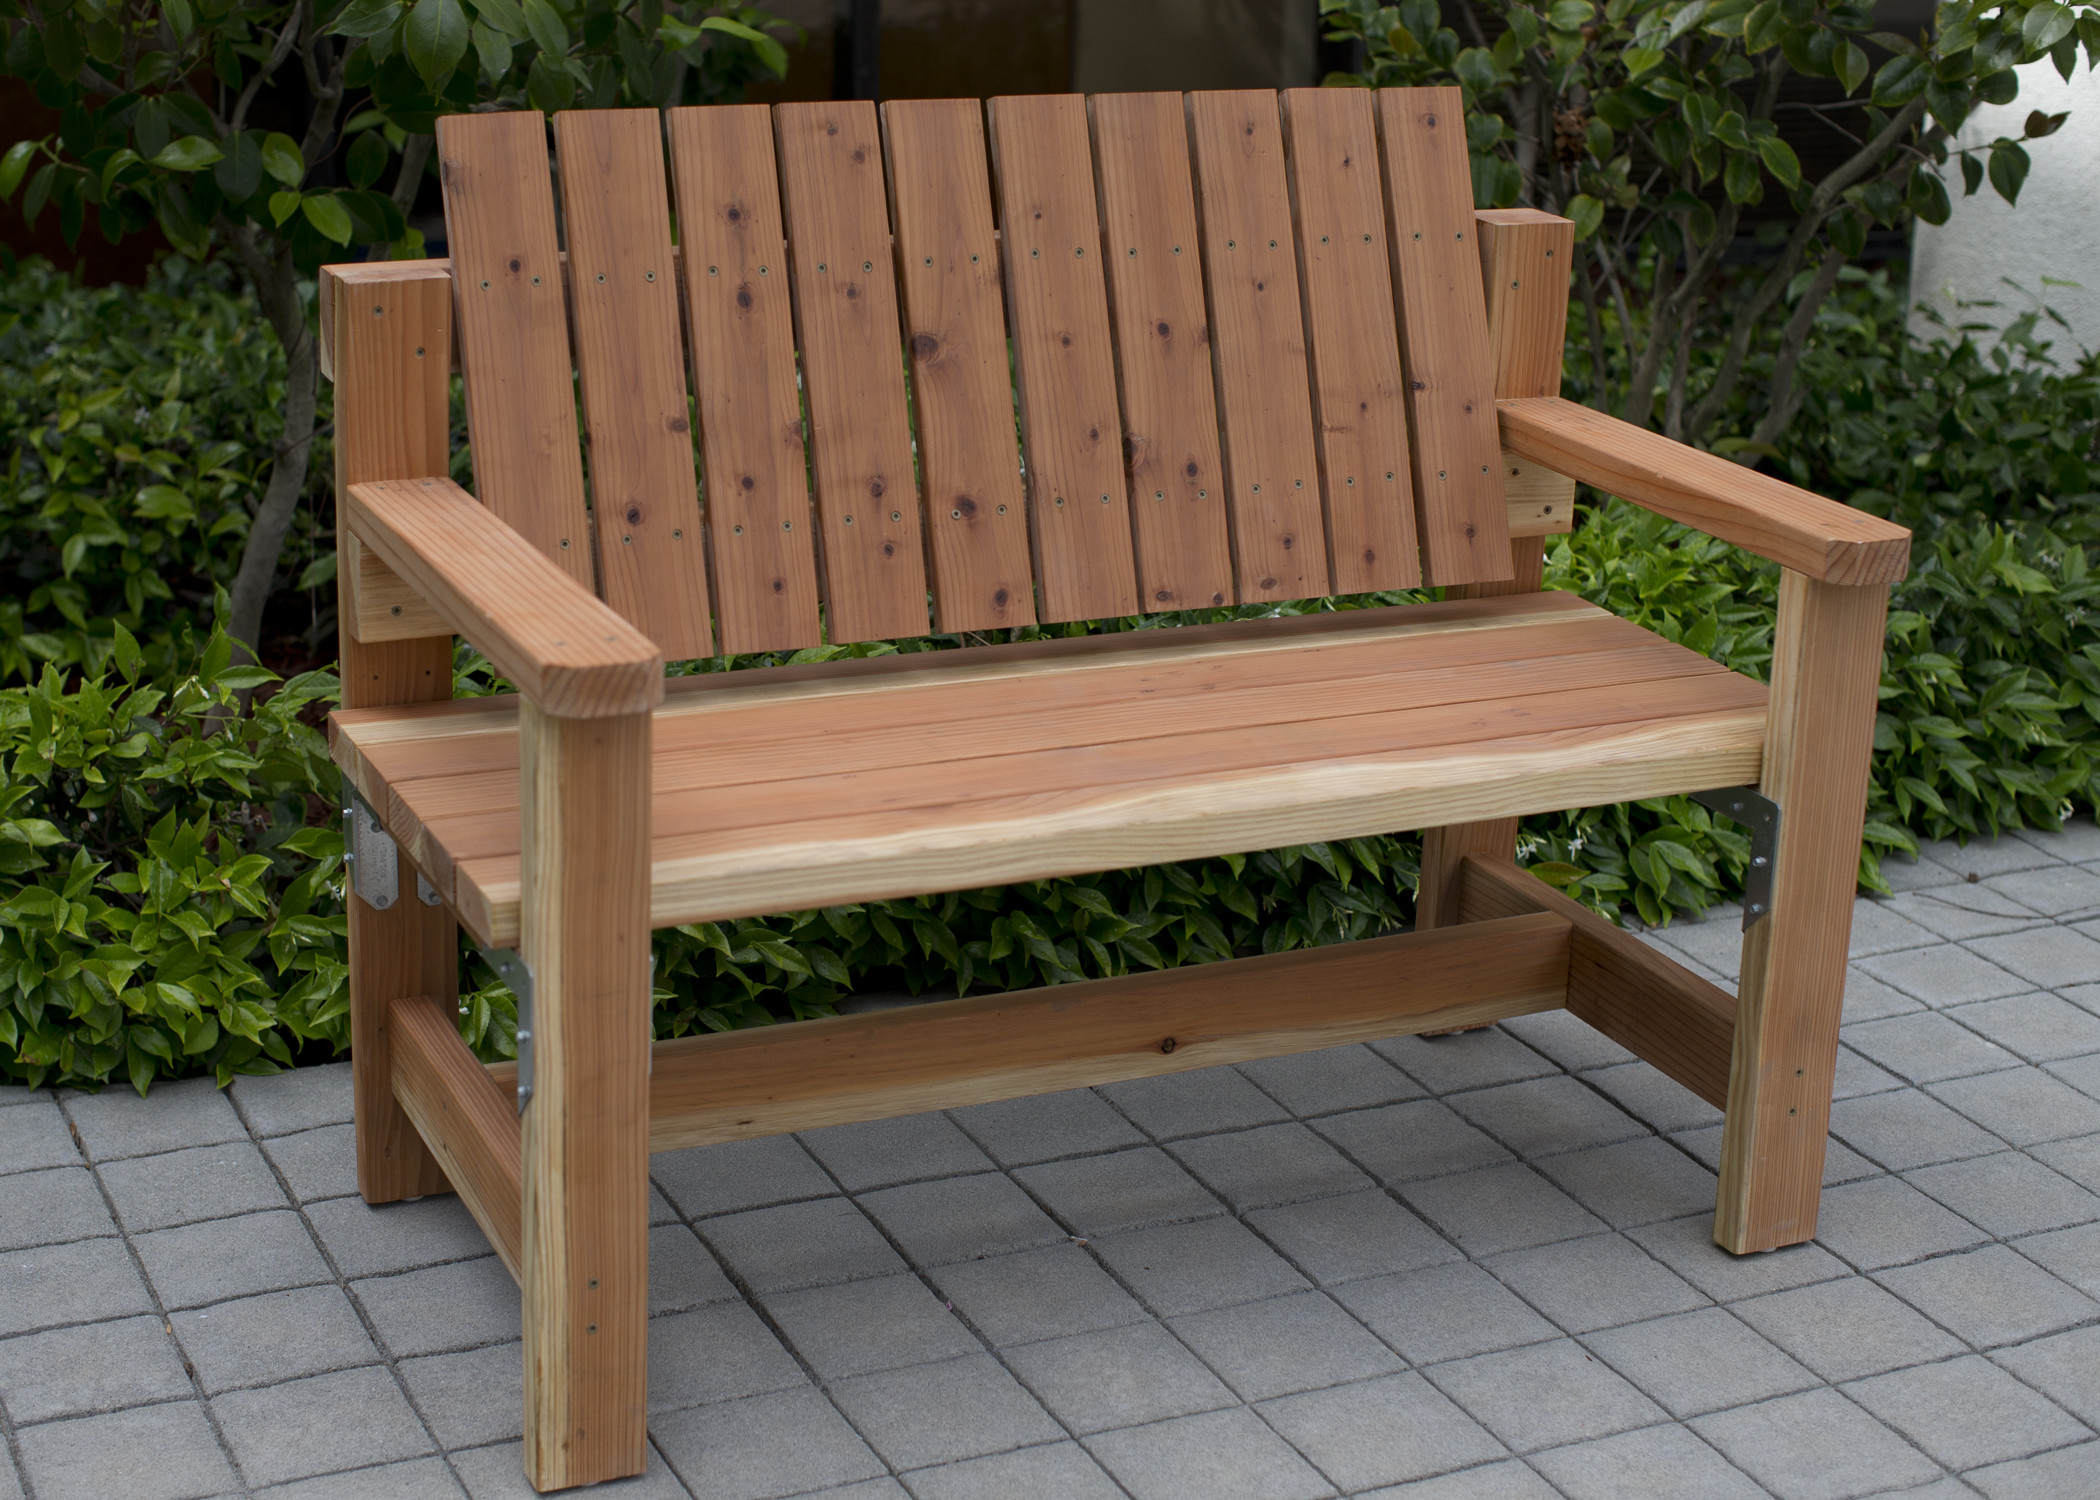 DIY Garden Bench Plans
 DIY Garden Bench Preview DIY Done Right